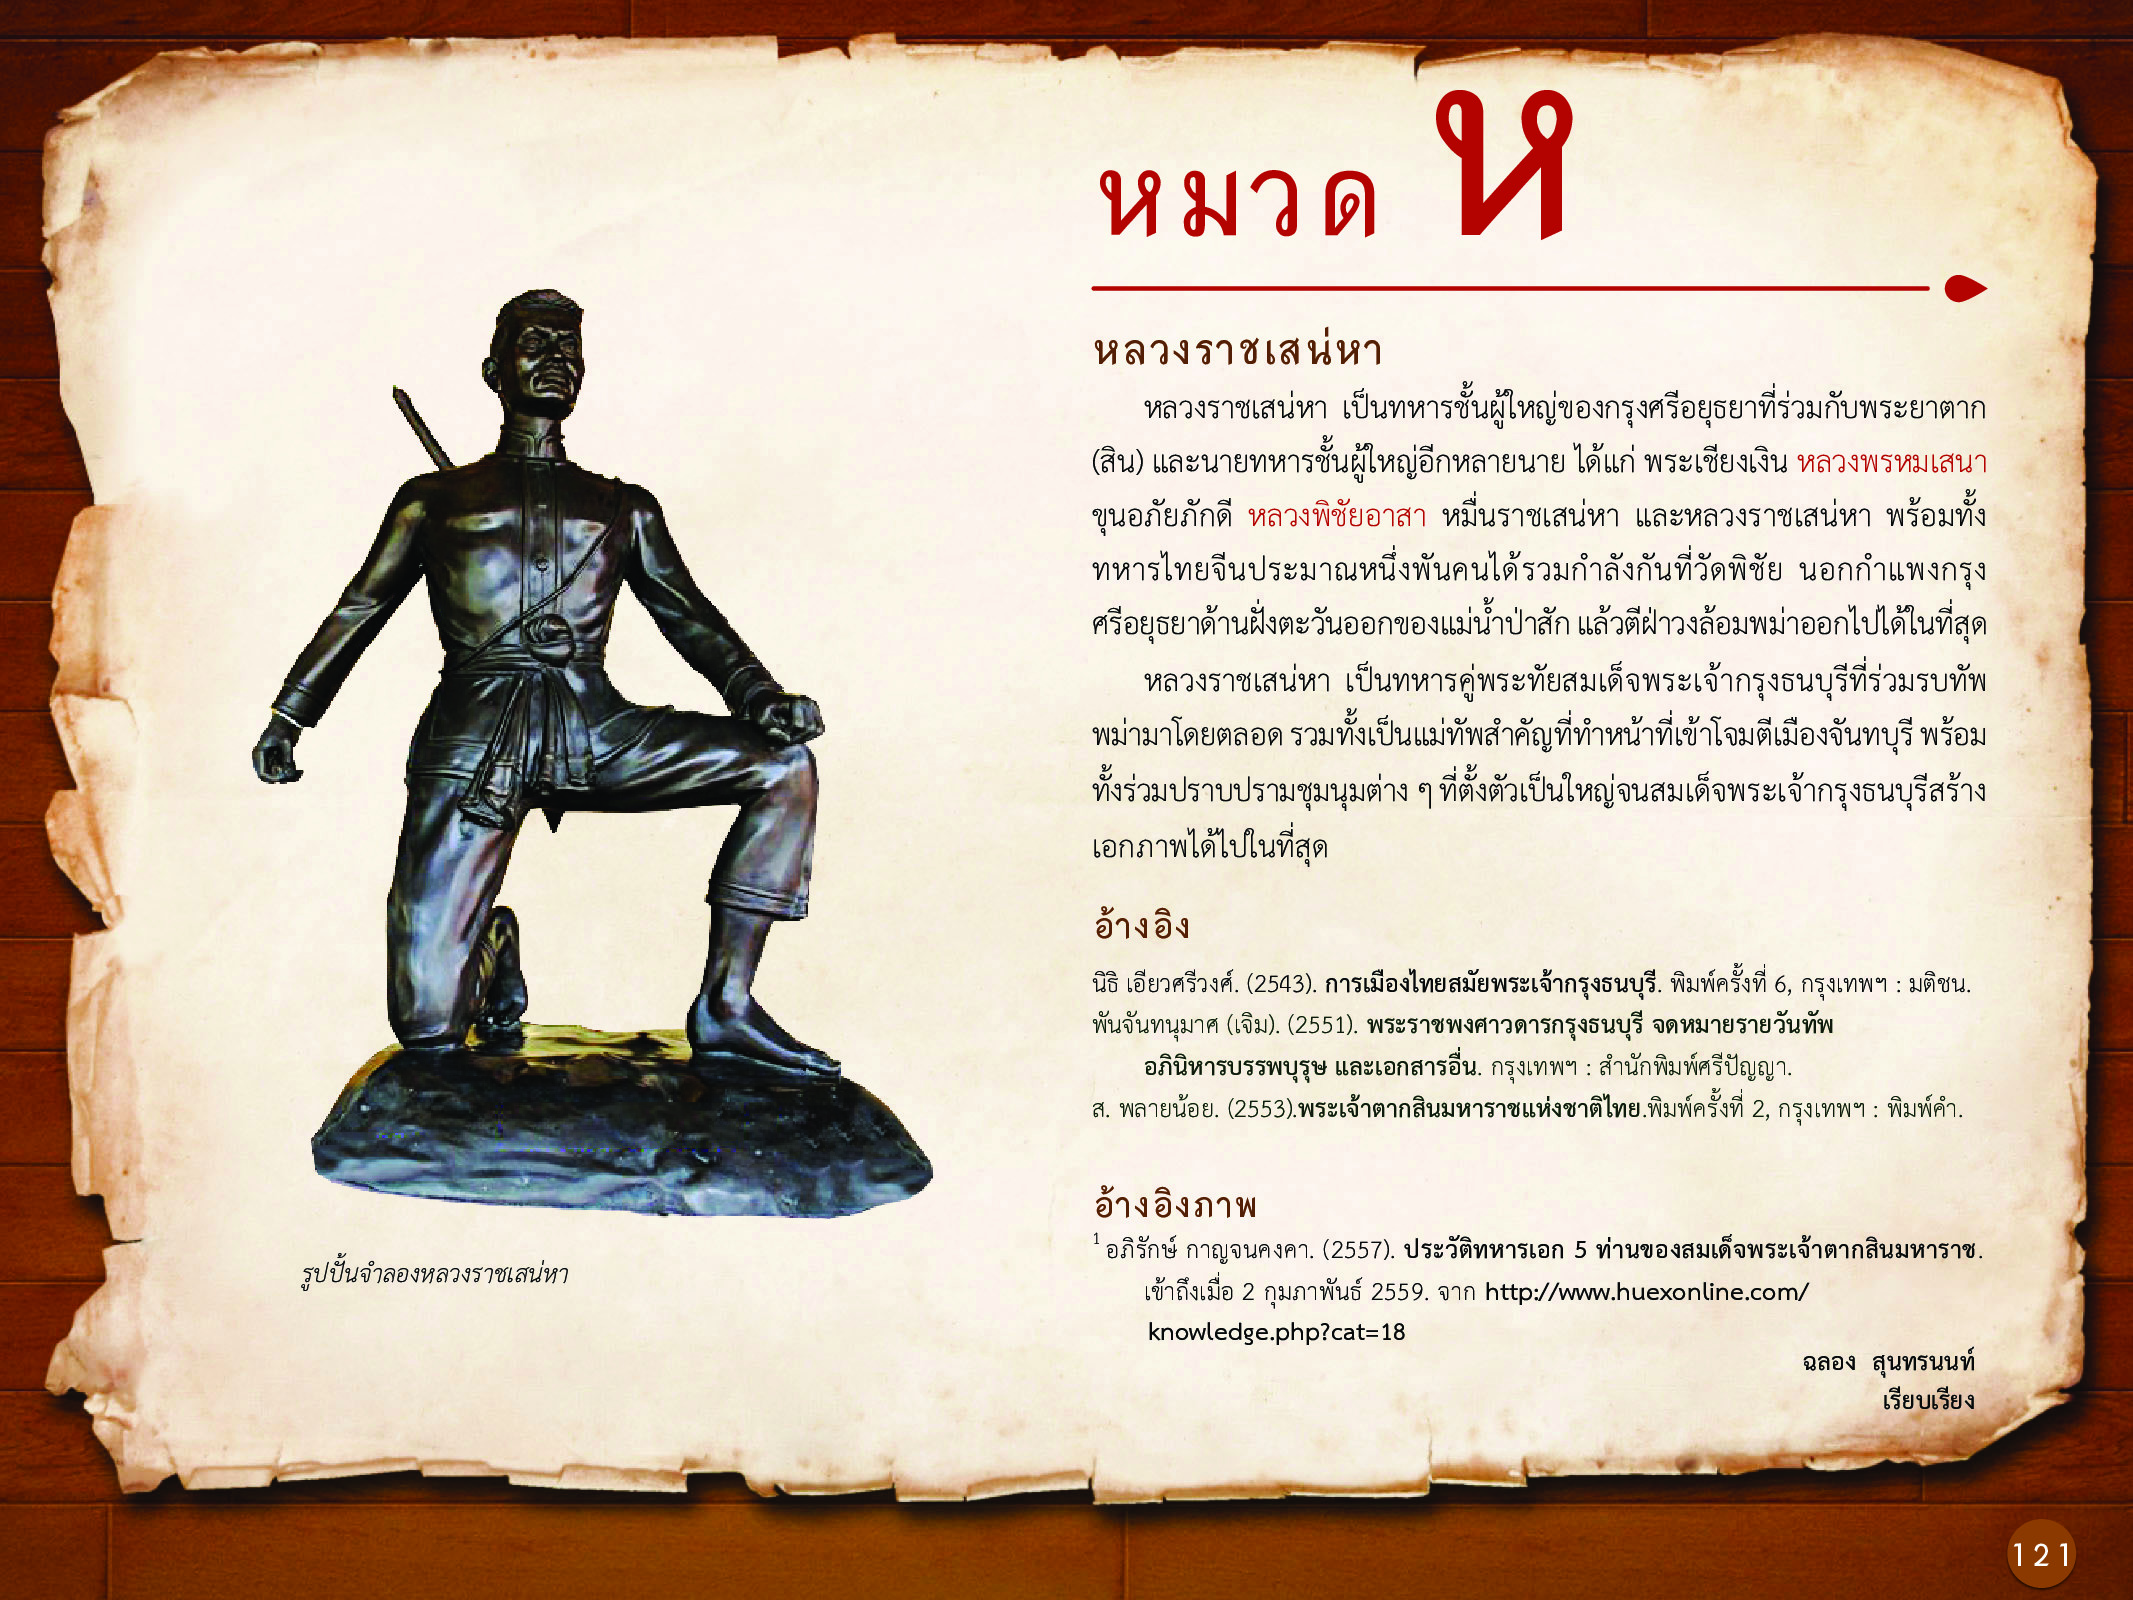 ประวัติศาสตร์กรุงธนบุรี ./images/history_dhonburi/121.jpg